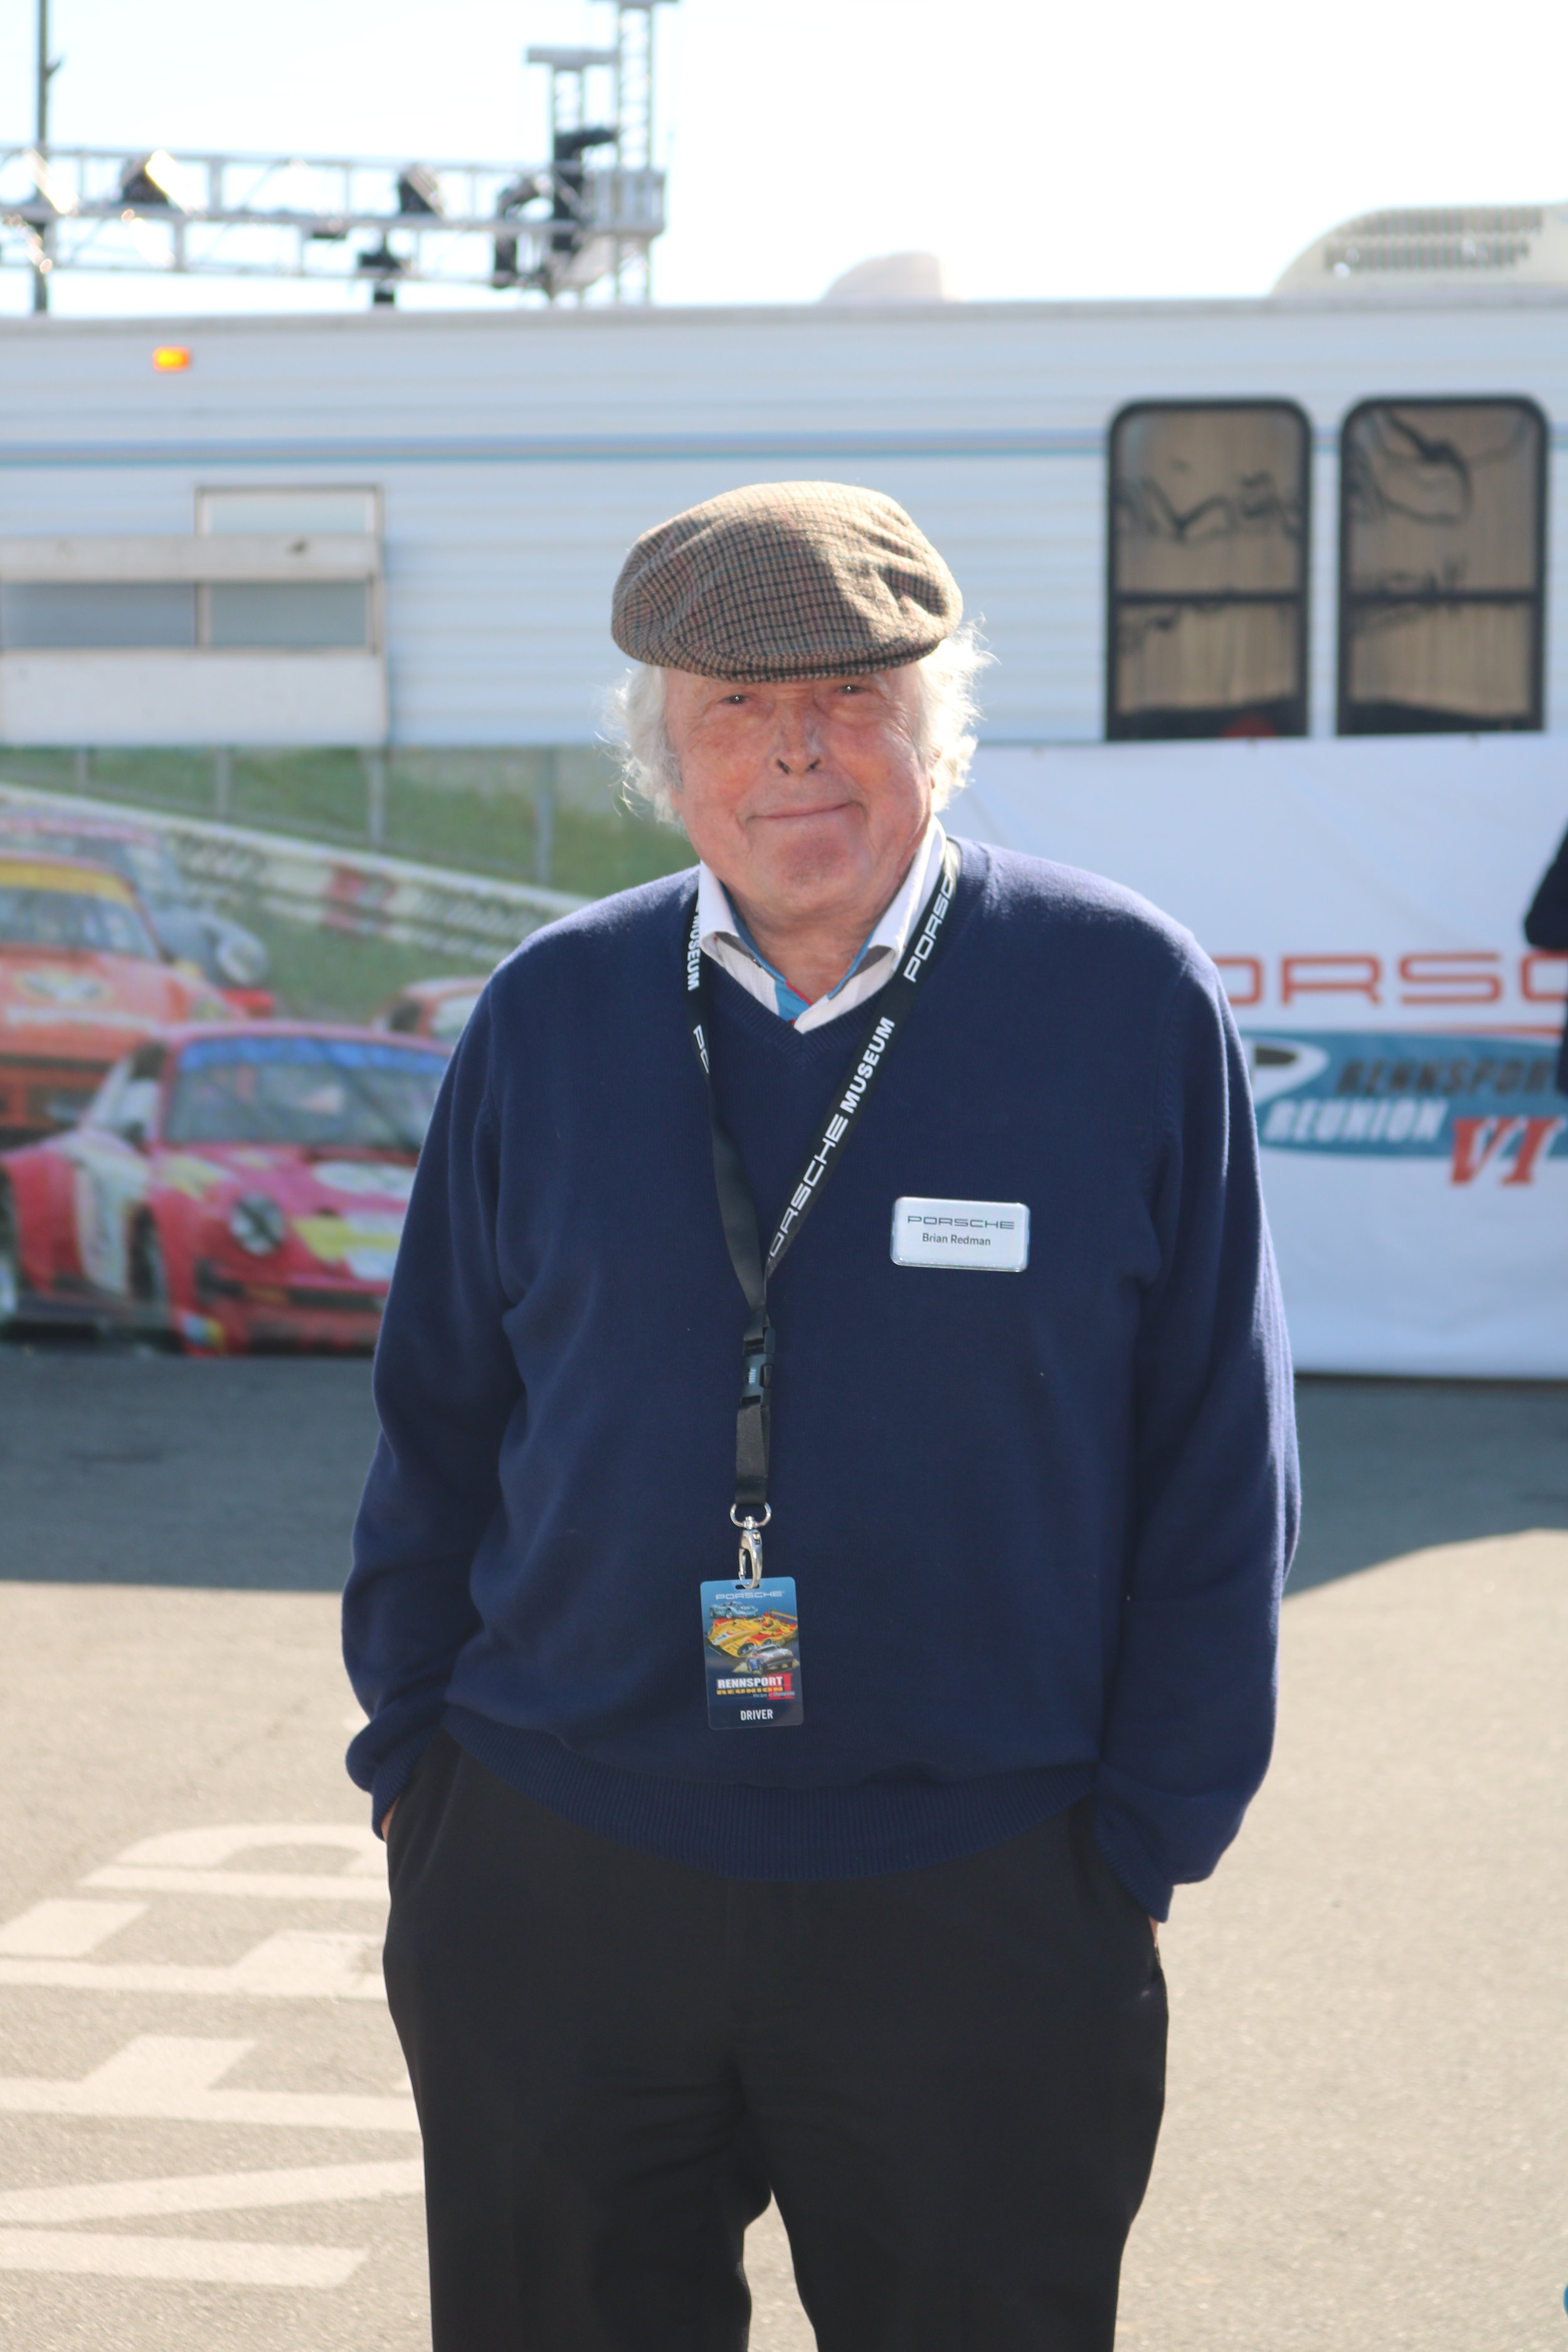 Porsche racing legend and Rennsport mastermind Brian Redman